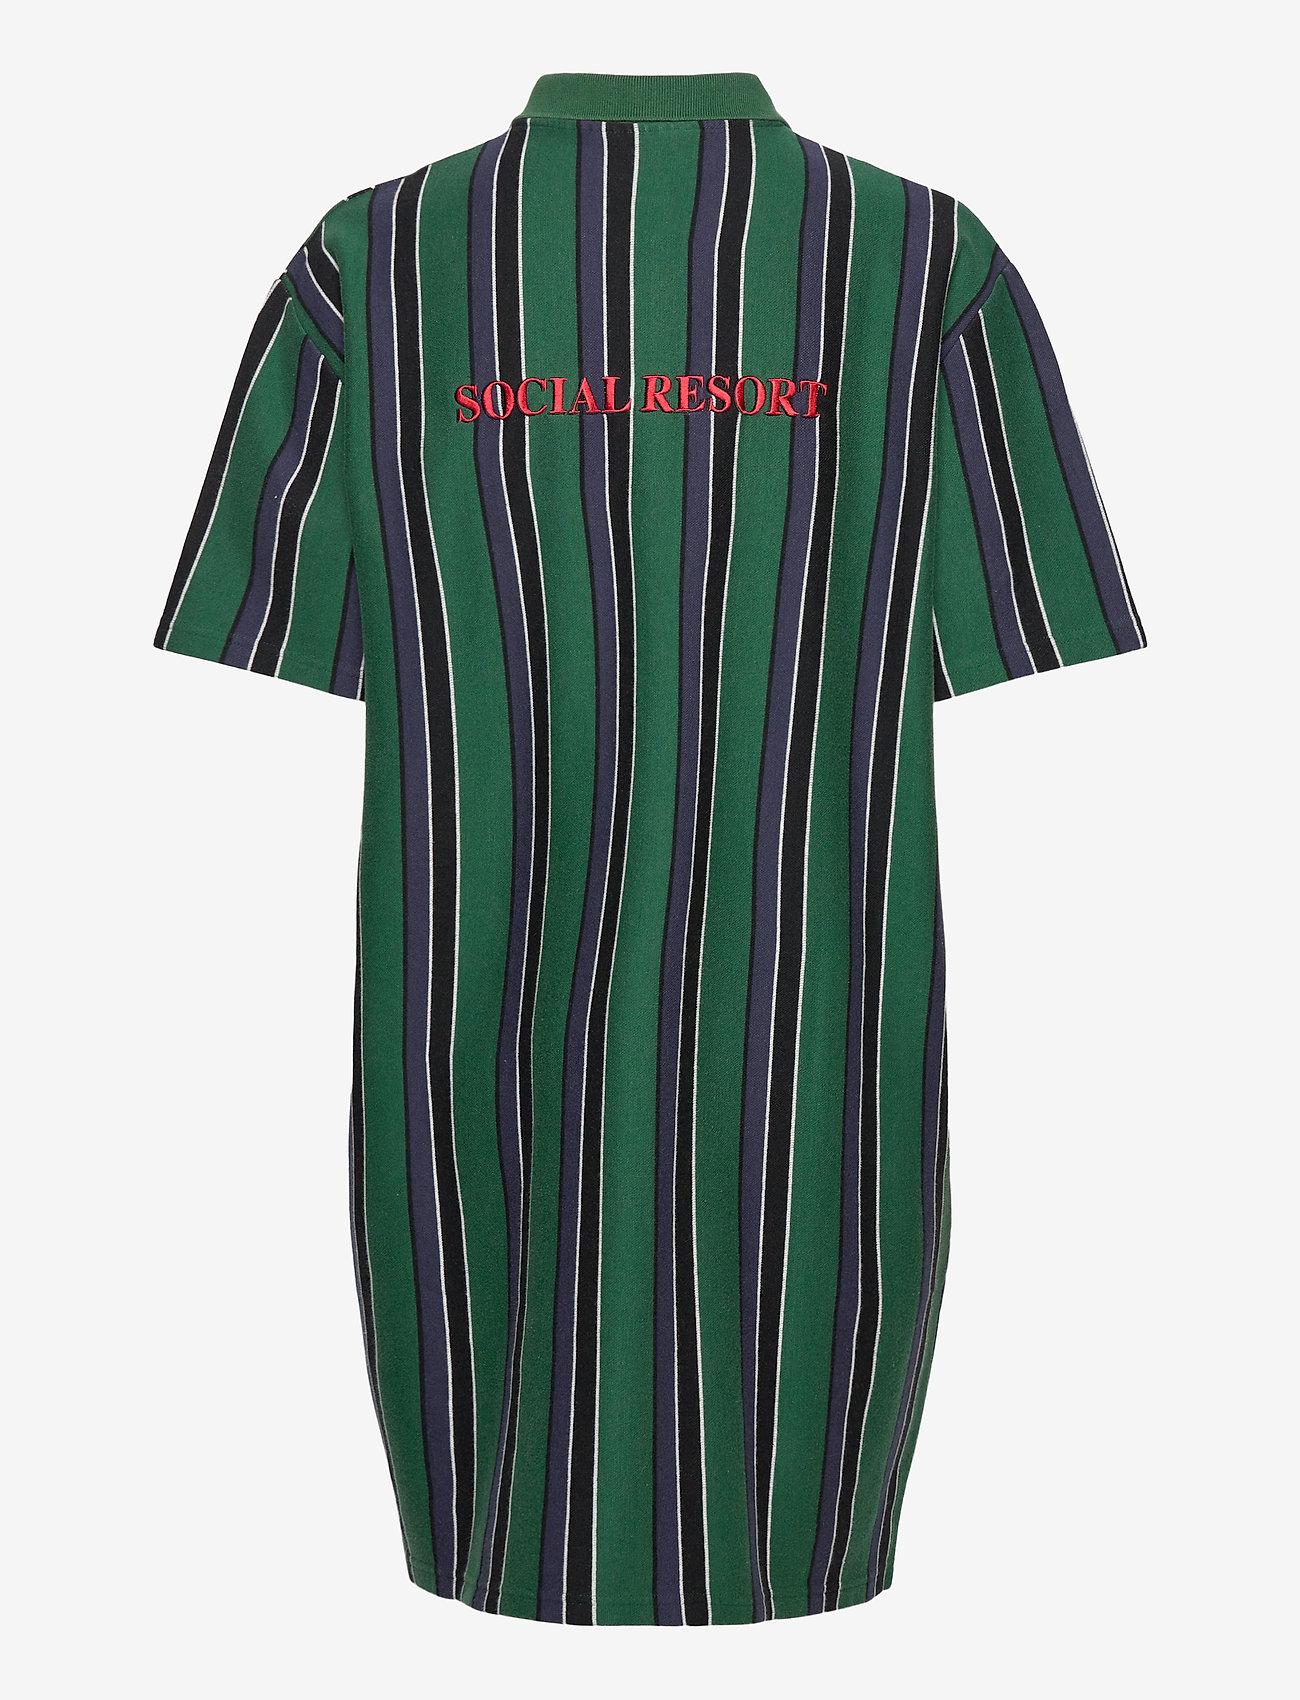 HAN Kjøbenhavn - Polo Dress - marškinėlių tipo suknelės - faded green - 1